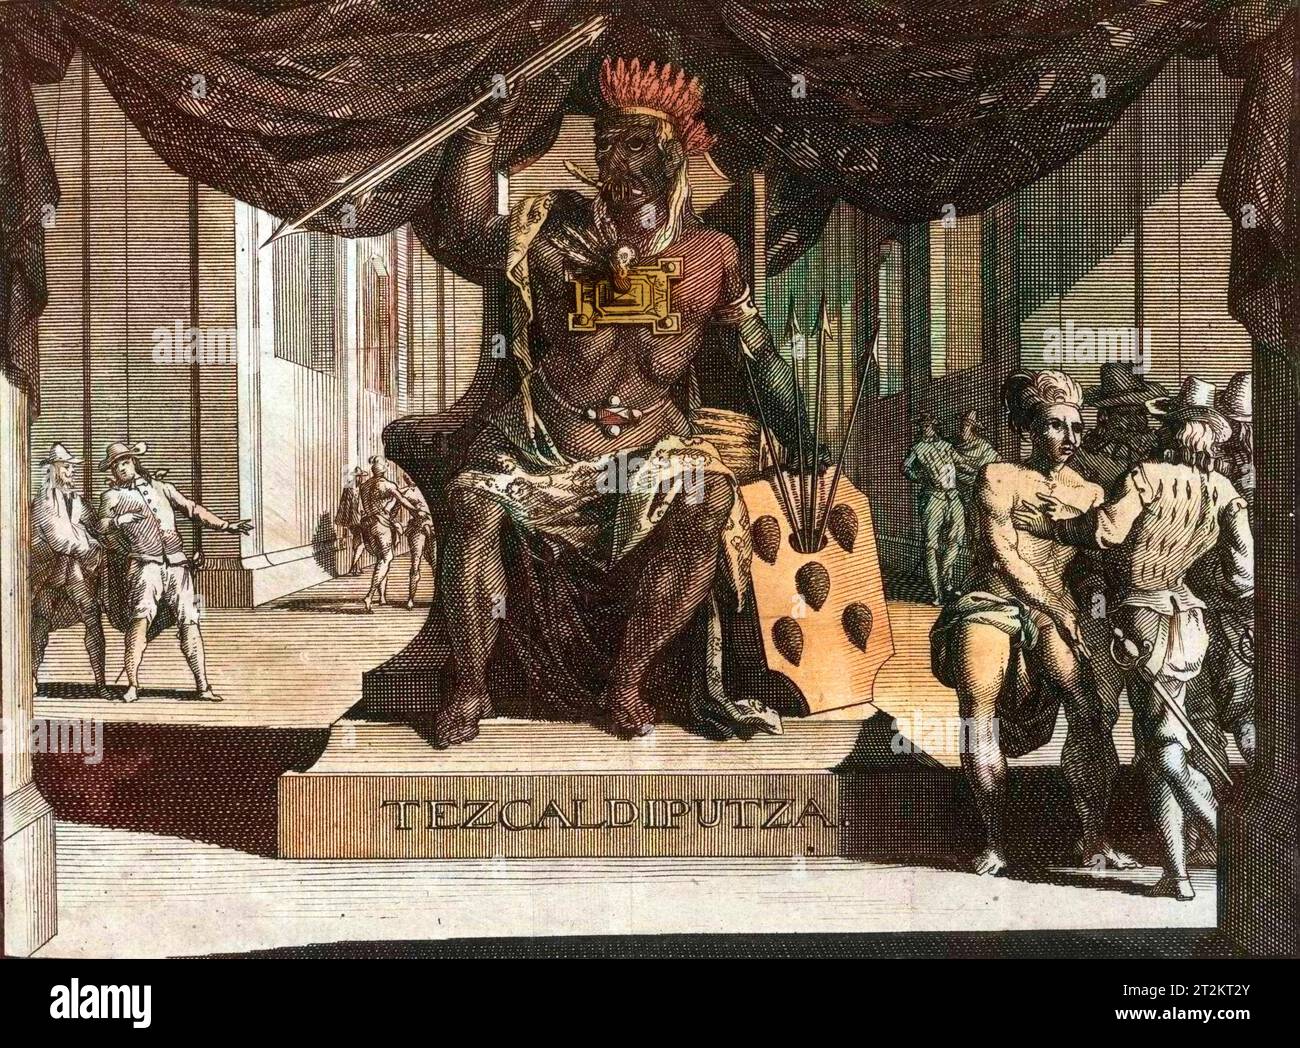 Die Statue des aztekischen Gottes Tezcatlipoca (Tezcaldiputza) mit Indianern und Europäern im freundlichen Gespräch. Stockfoto